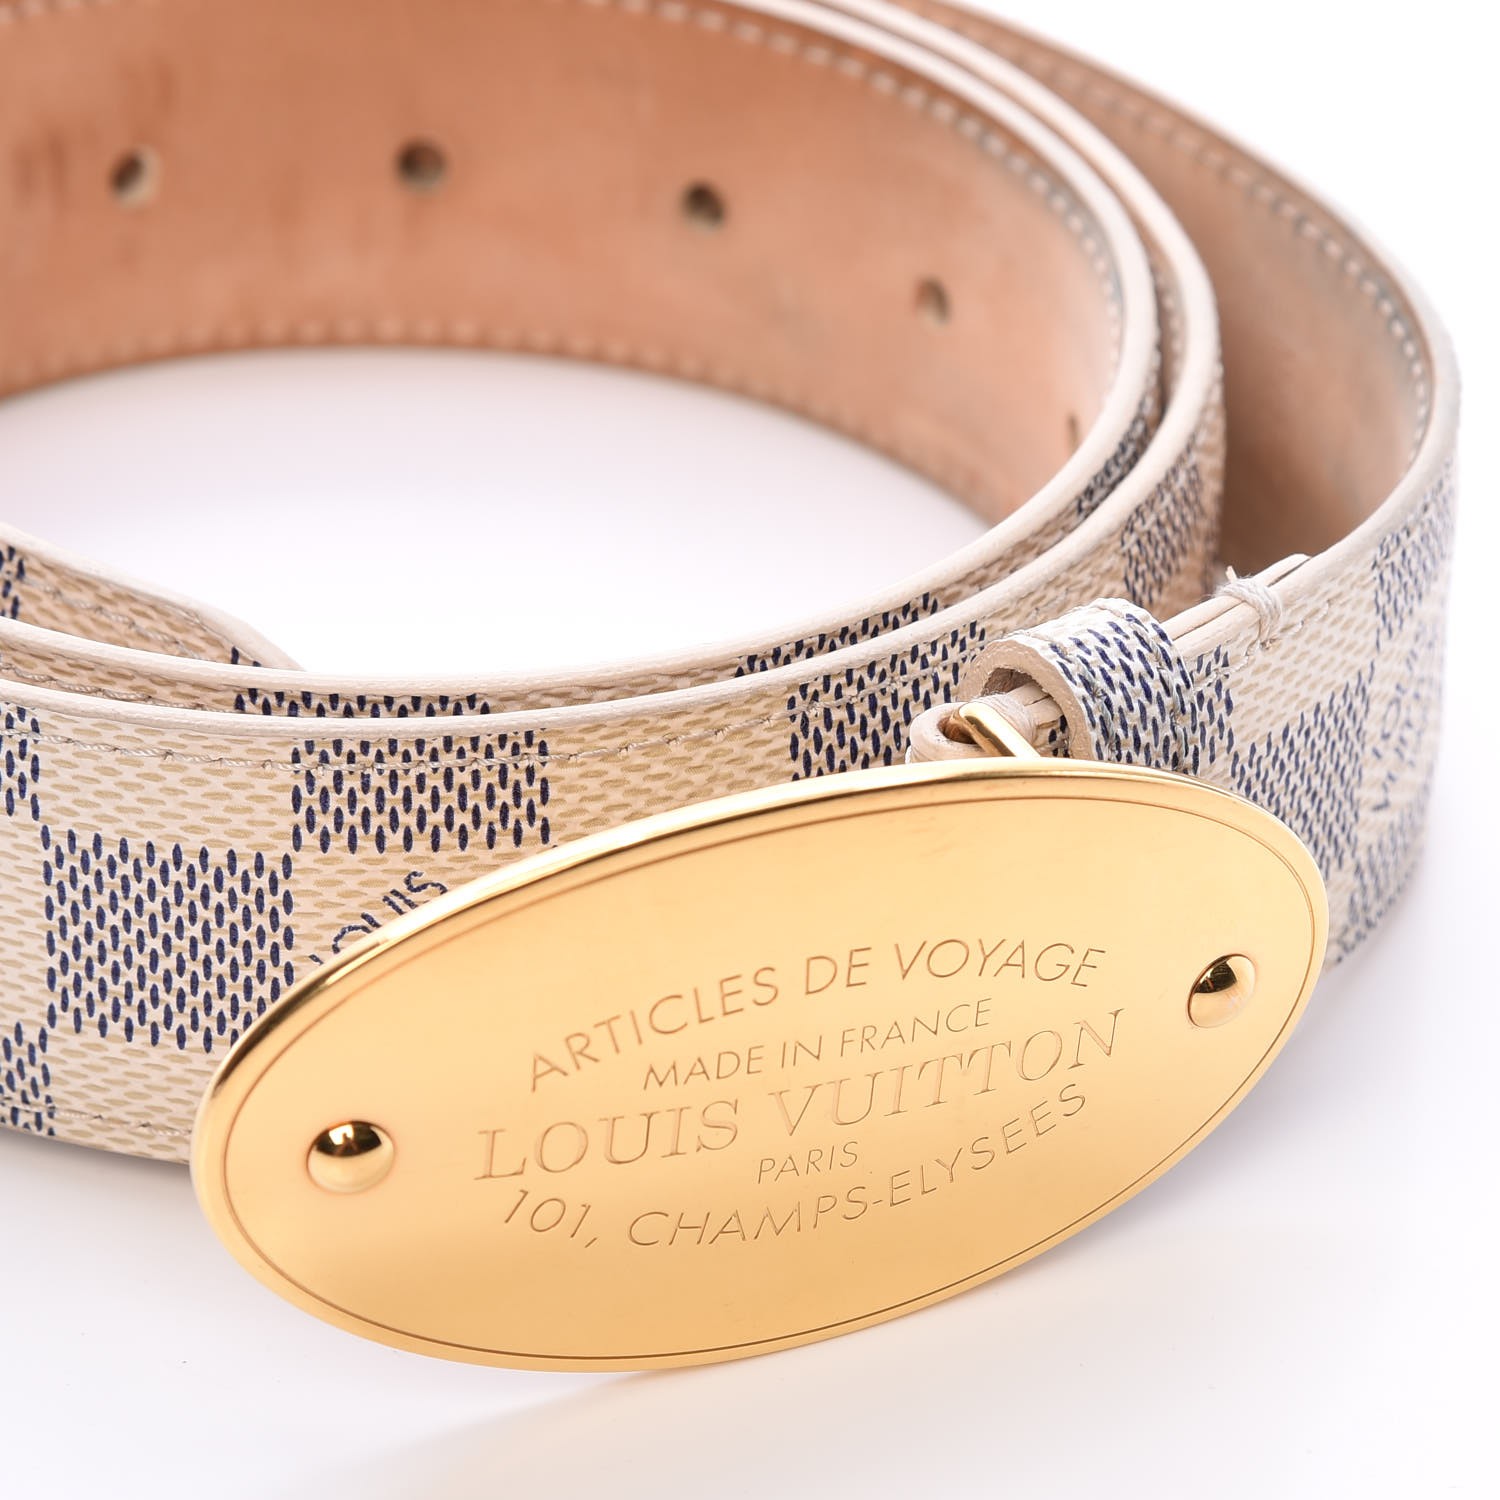 Unboxing Louis Vuitton Damier Azur mm planner Agenda 